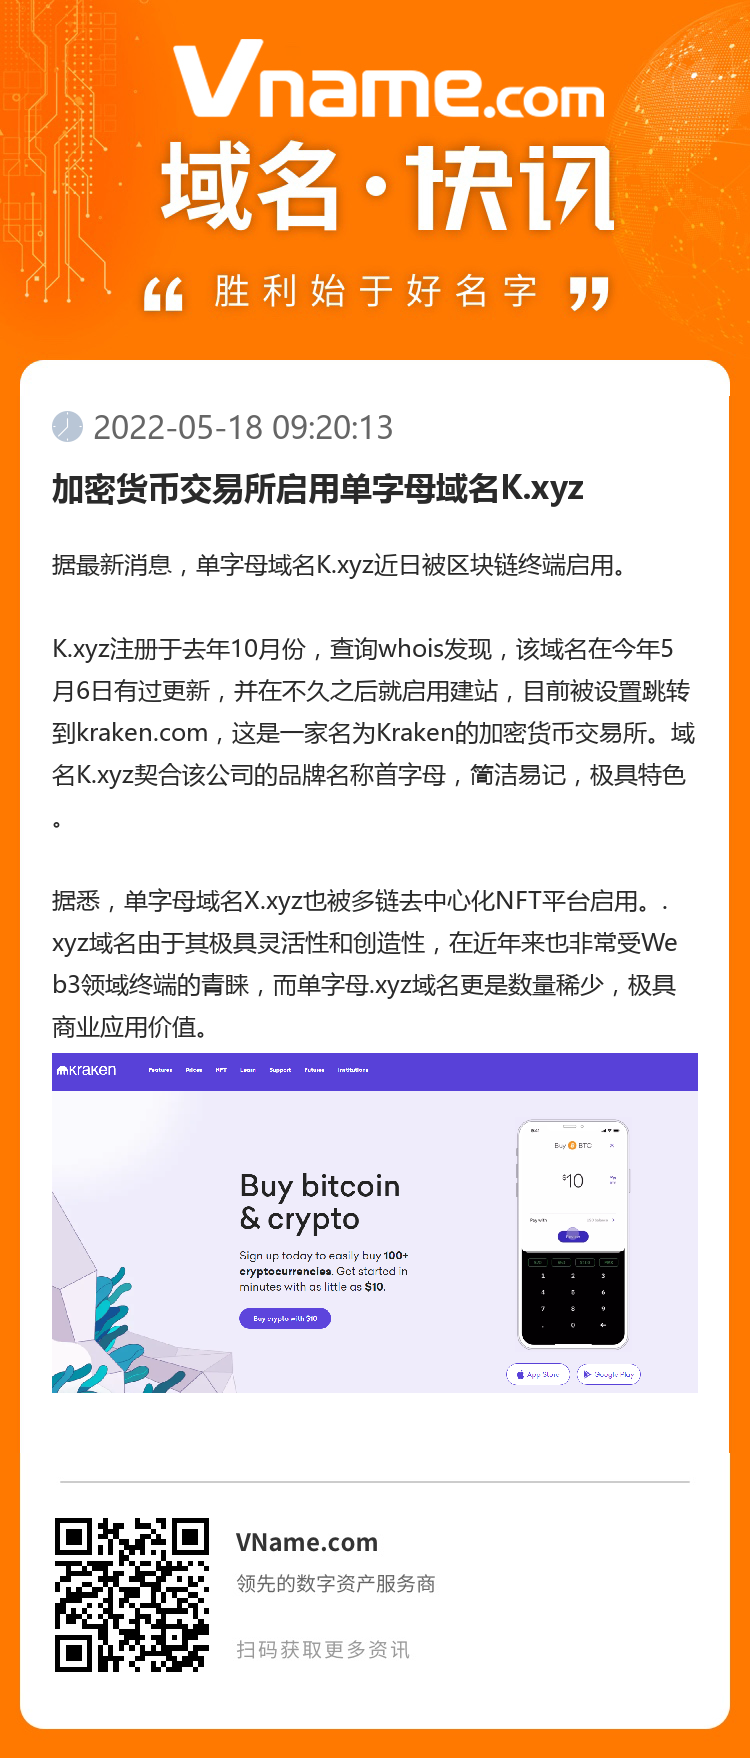 加密货币交易所启用单字母域名K.xyz